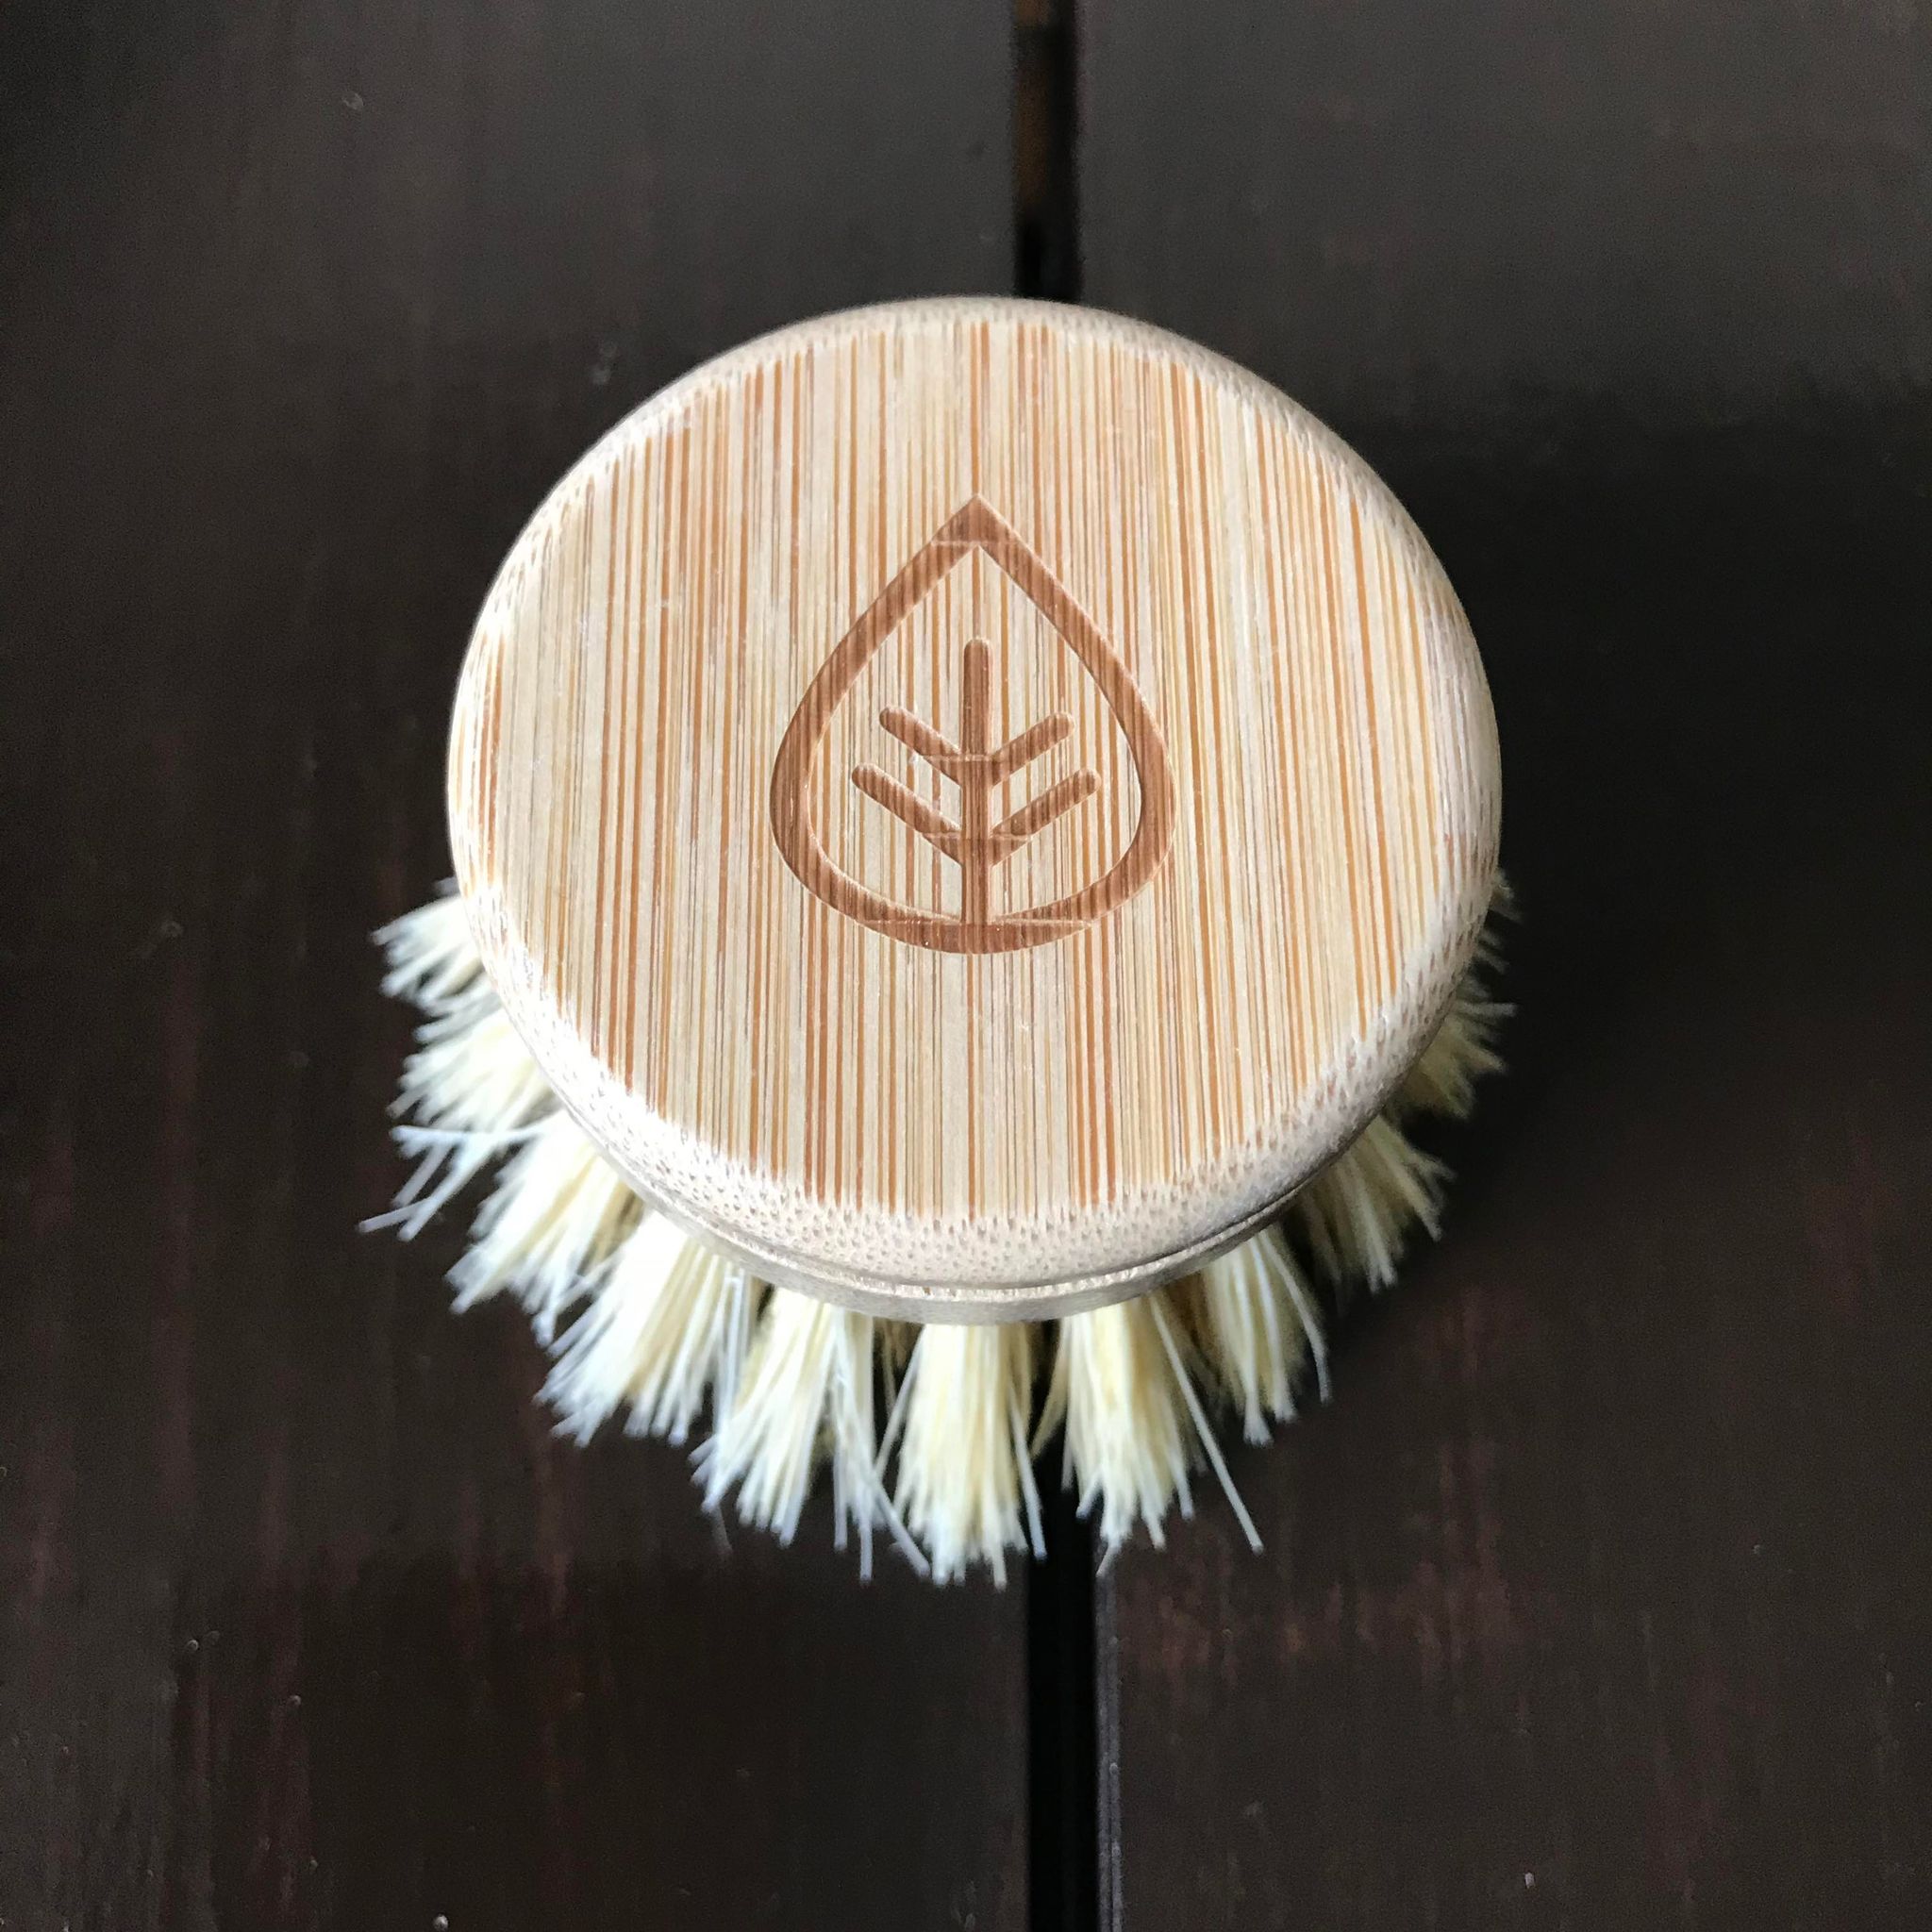 Refill head for Plalntish sisal bamboo dish brush